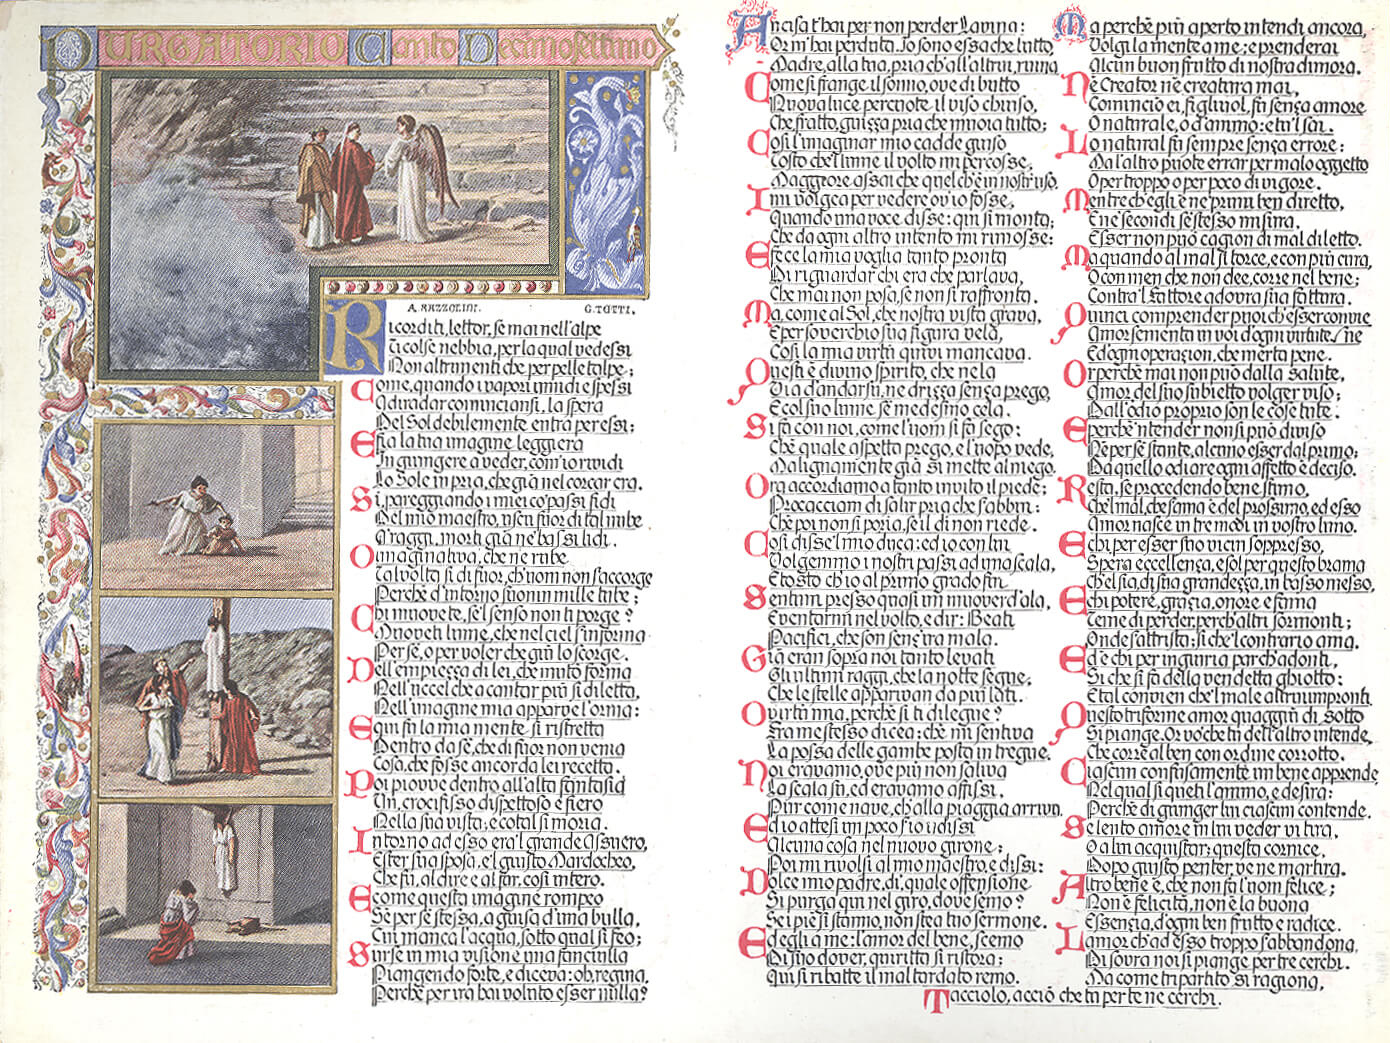 Курсовая работа по теме C Данте по кругам ада: жизнь и смерть в средние века(на примере художественной литературы)